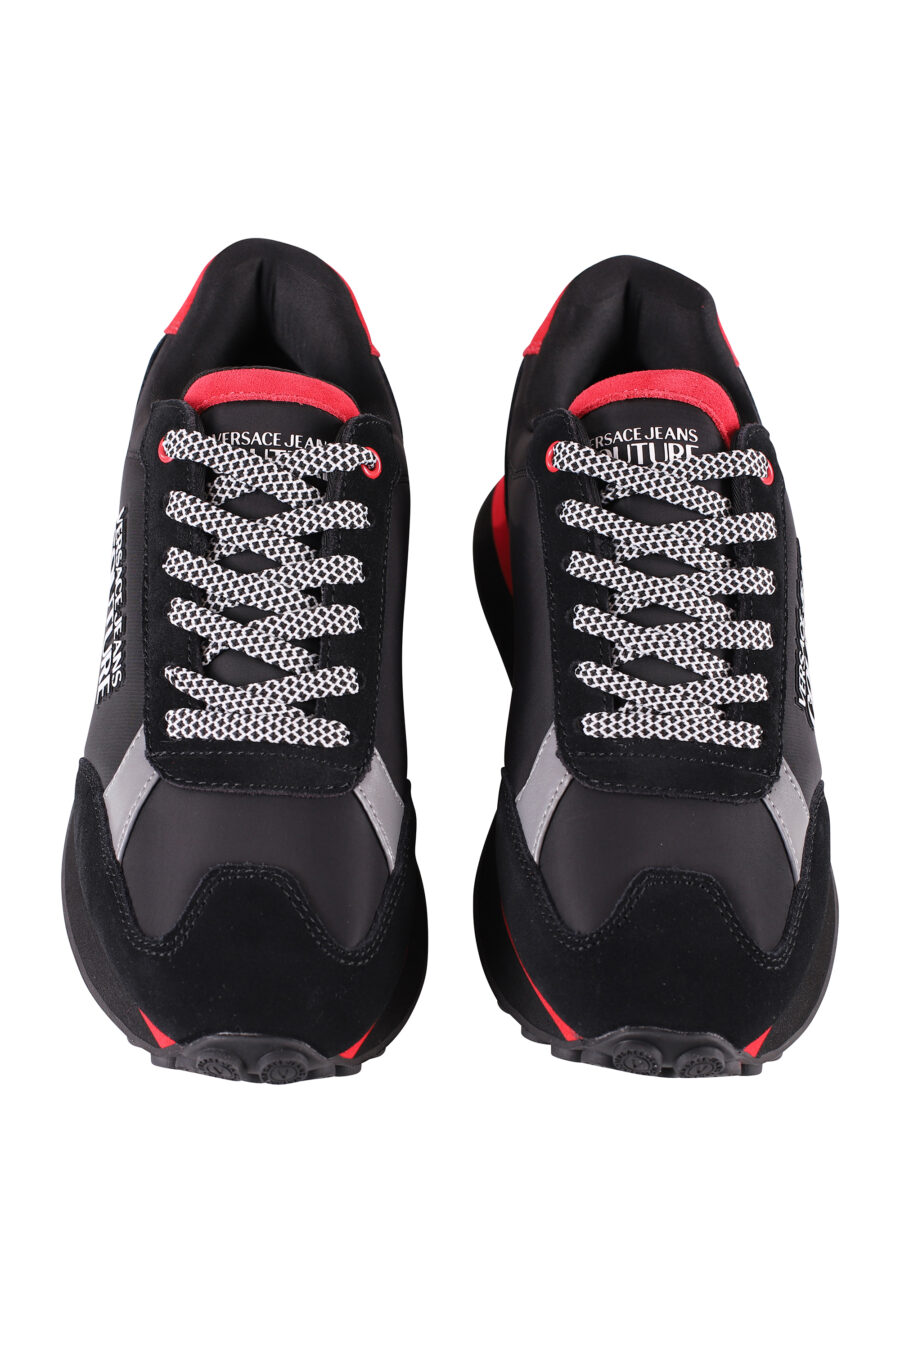 Zapatillas negras y rojas con plataforma y logo plateado - IMG 8497